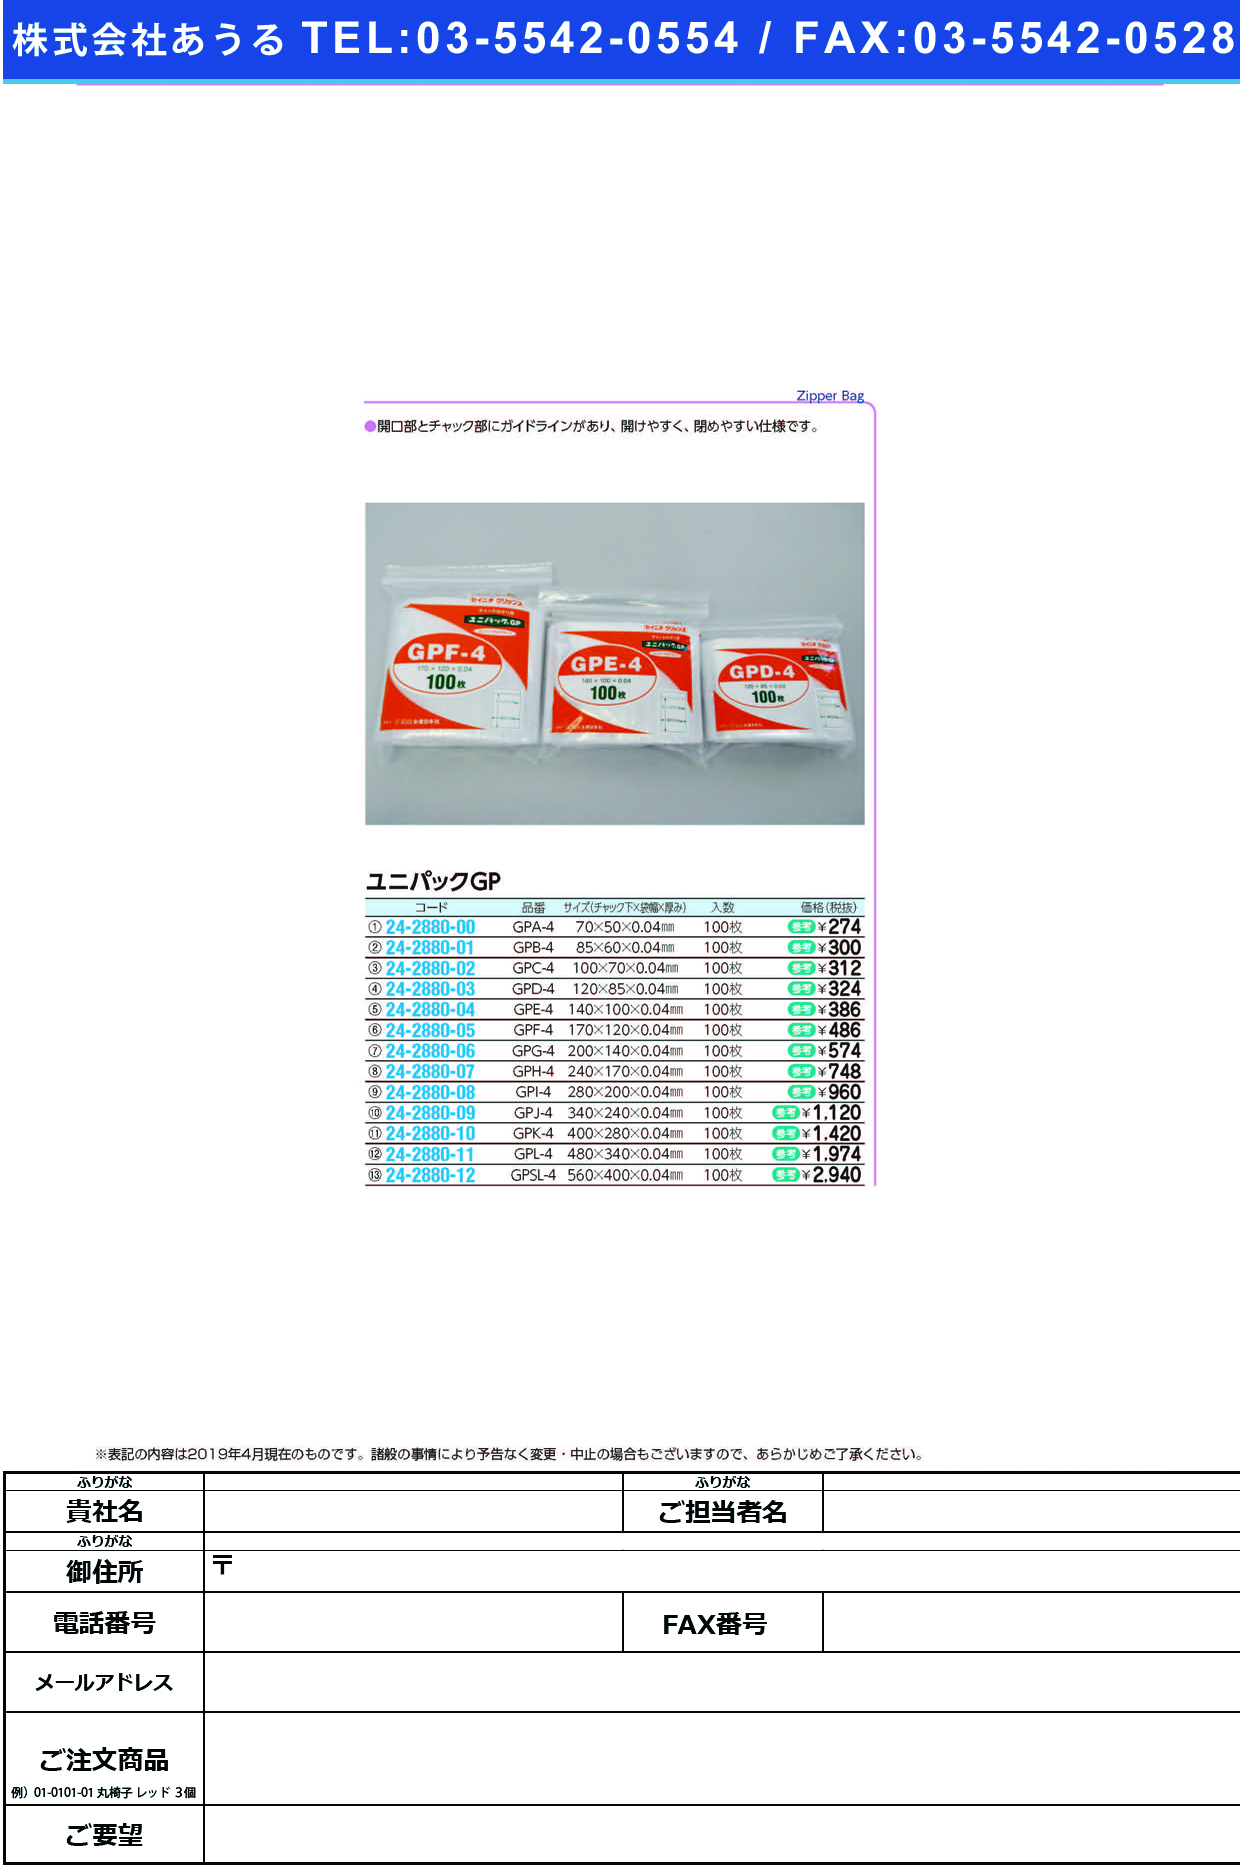 (24-2880-12)ユニパックＧＰ GPSL-4(560X400MM)100 ﾕﾆﾊﾟｯｸGP【1袋単位】【2019年カタログ商品】